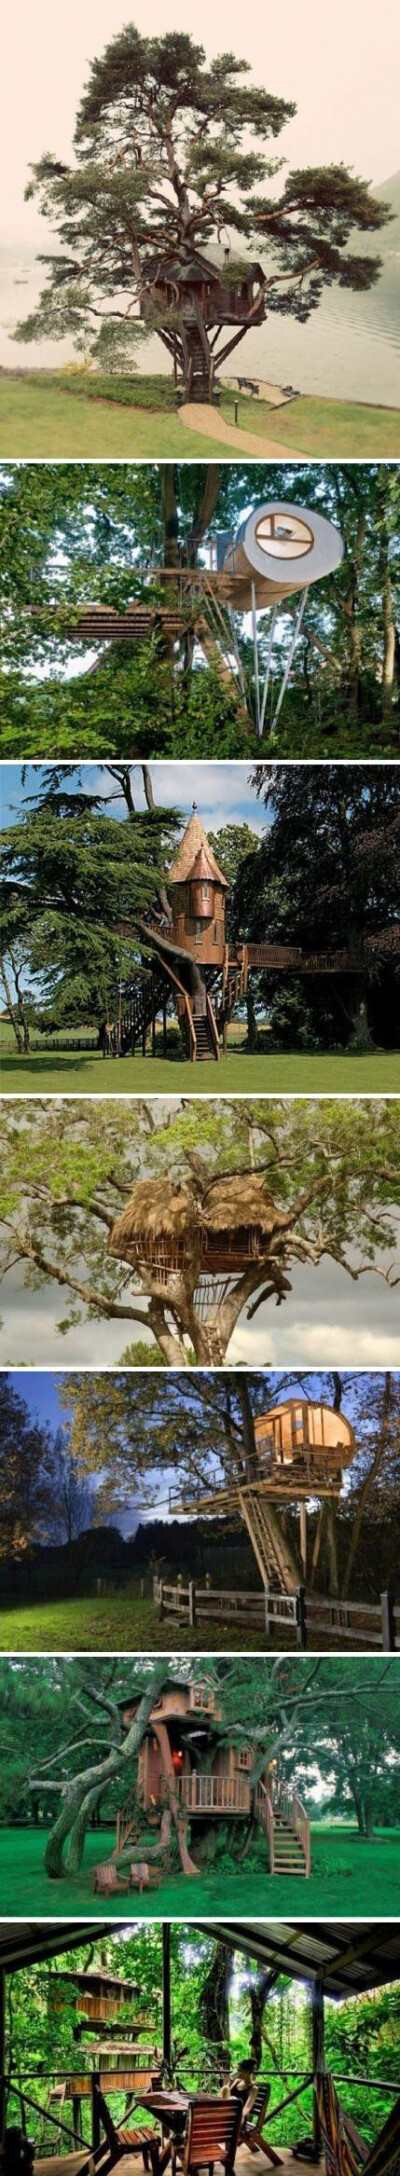 你想住在这样的树屋中吗？「转」